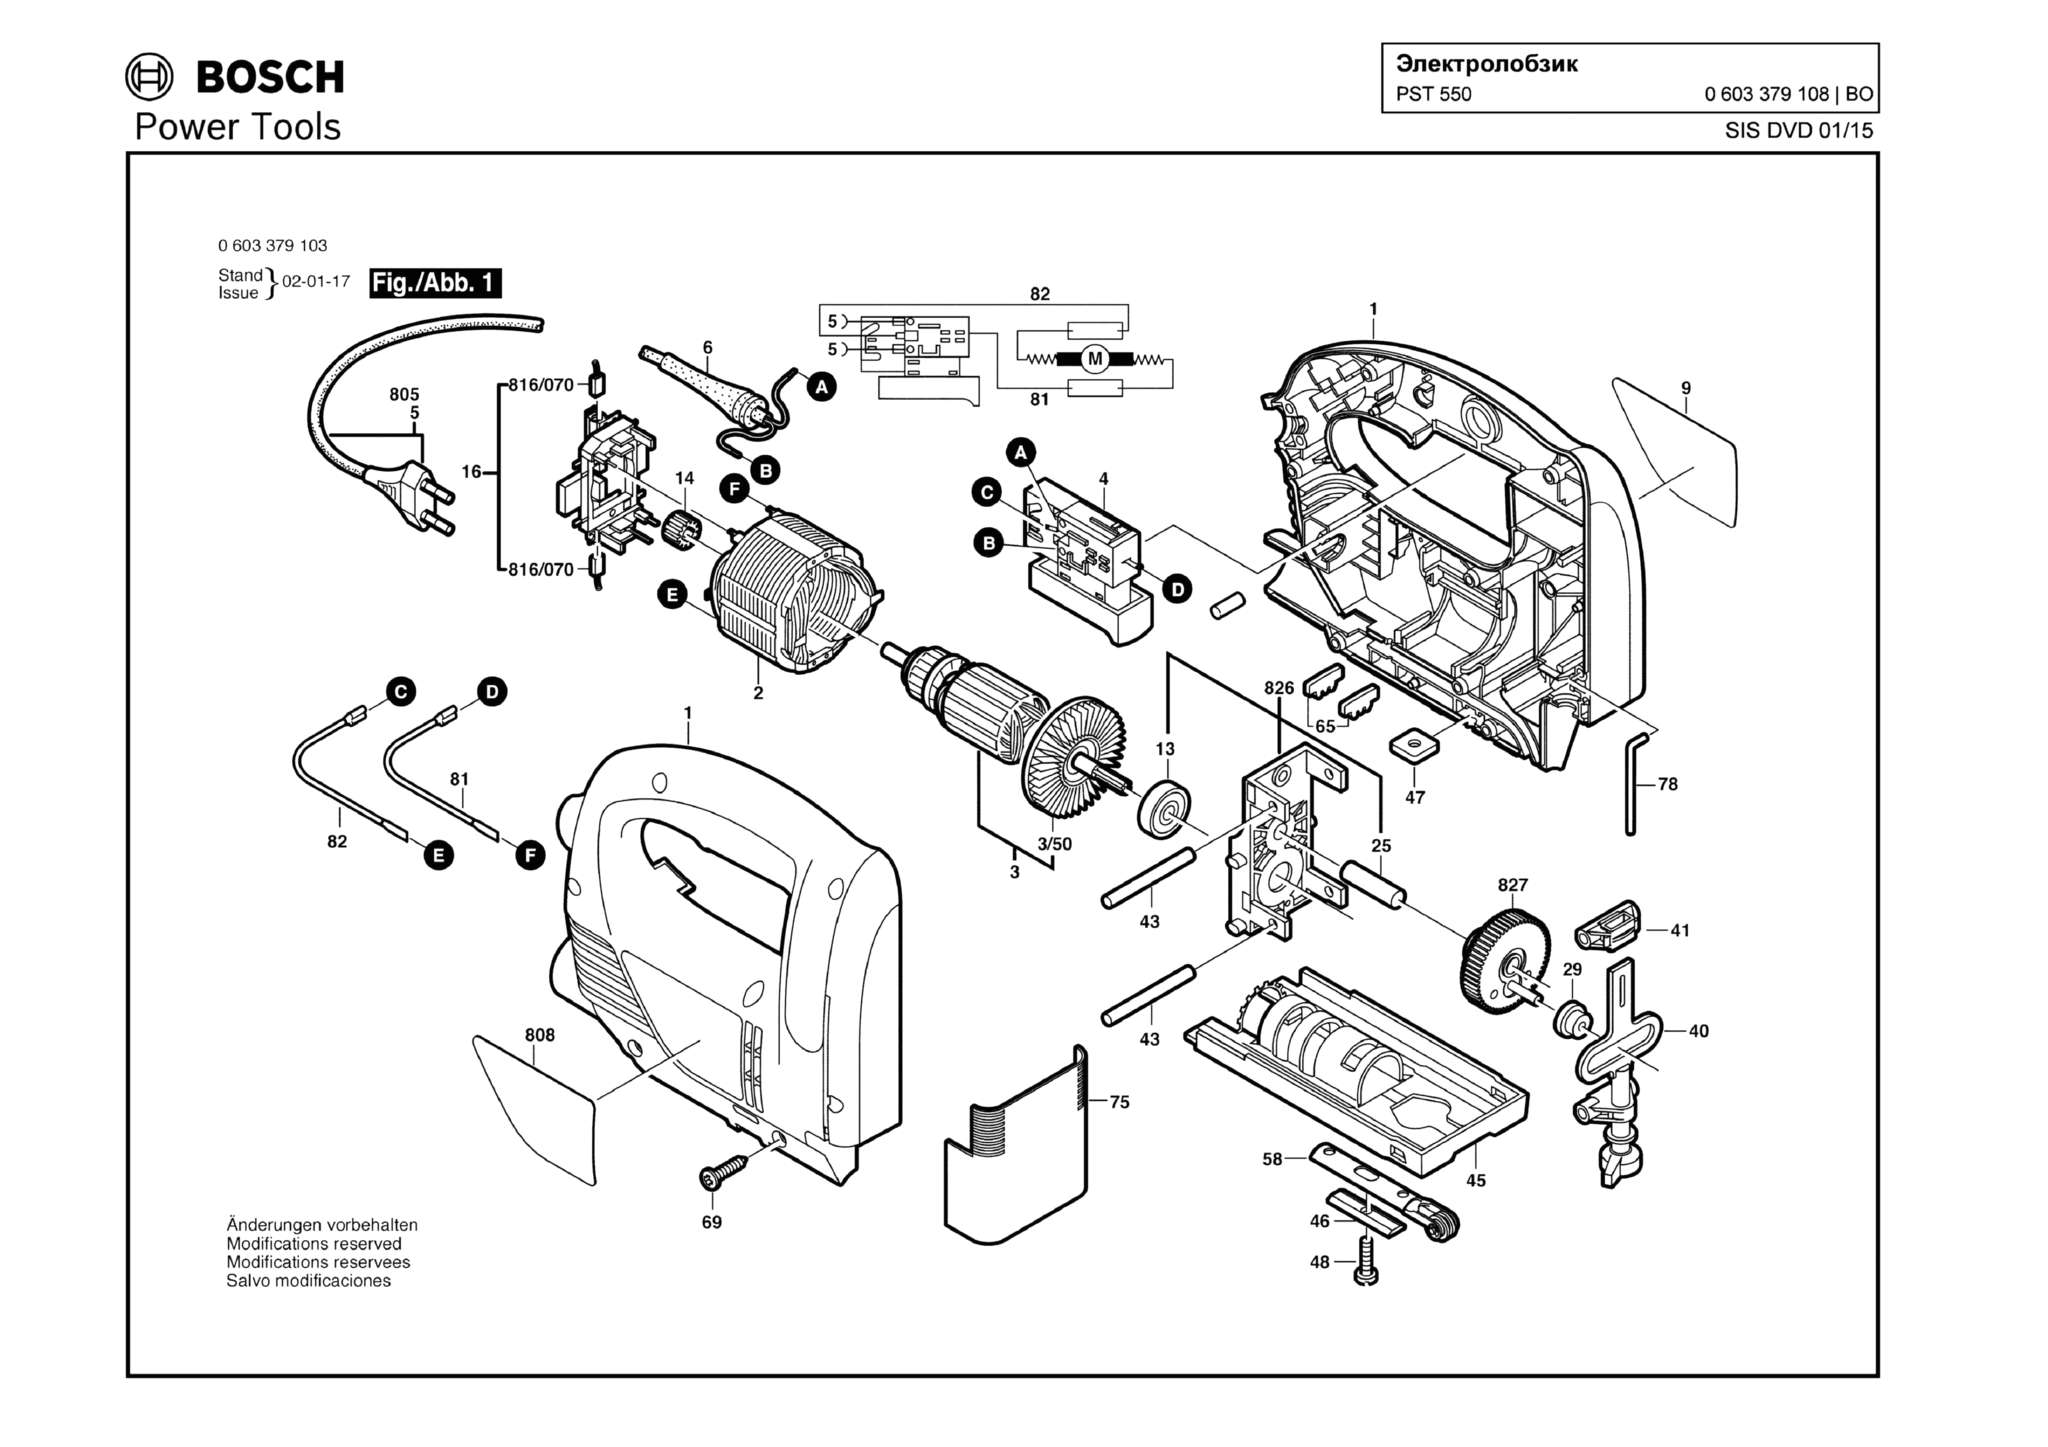 Запчасти, схема и деталировка Bosch PST 550 (ТИП 0603379108)